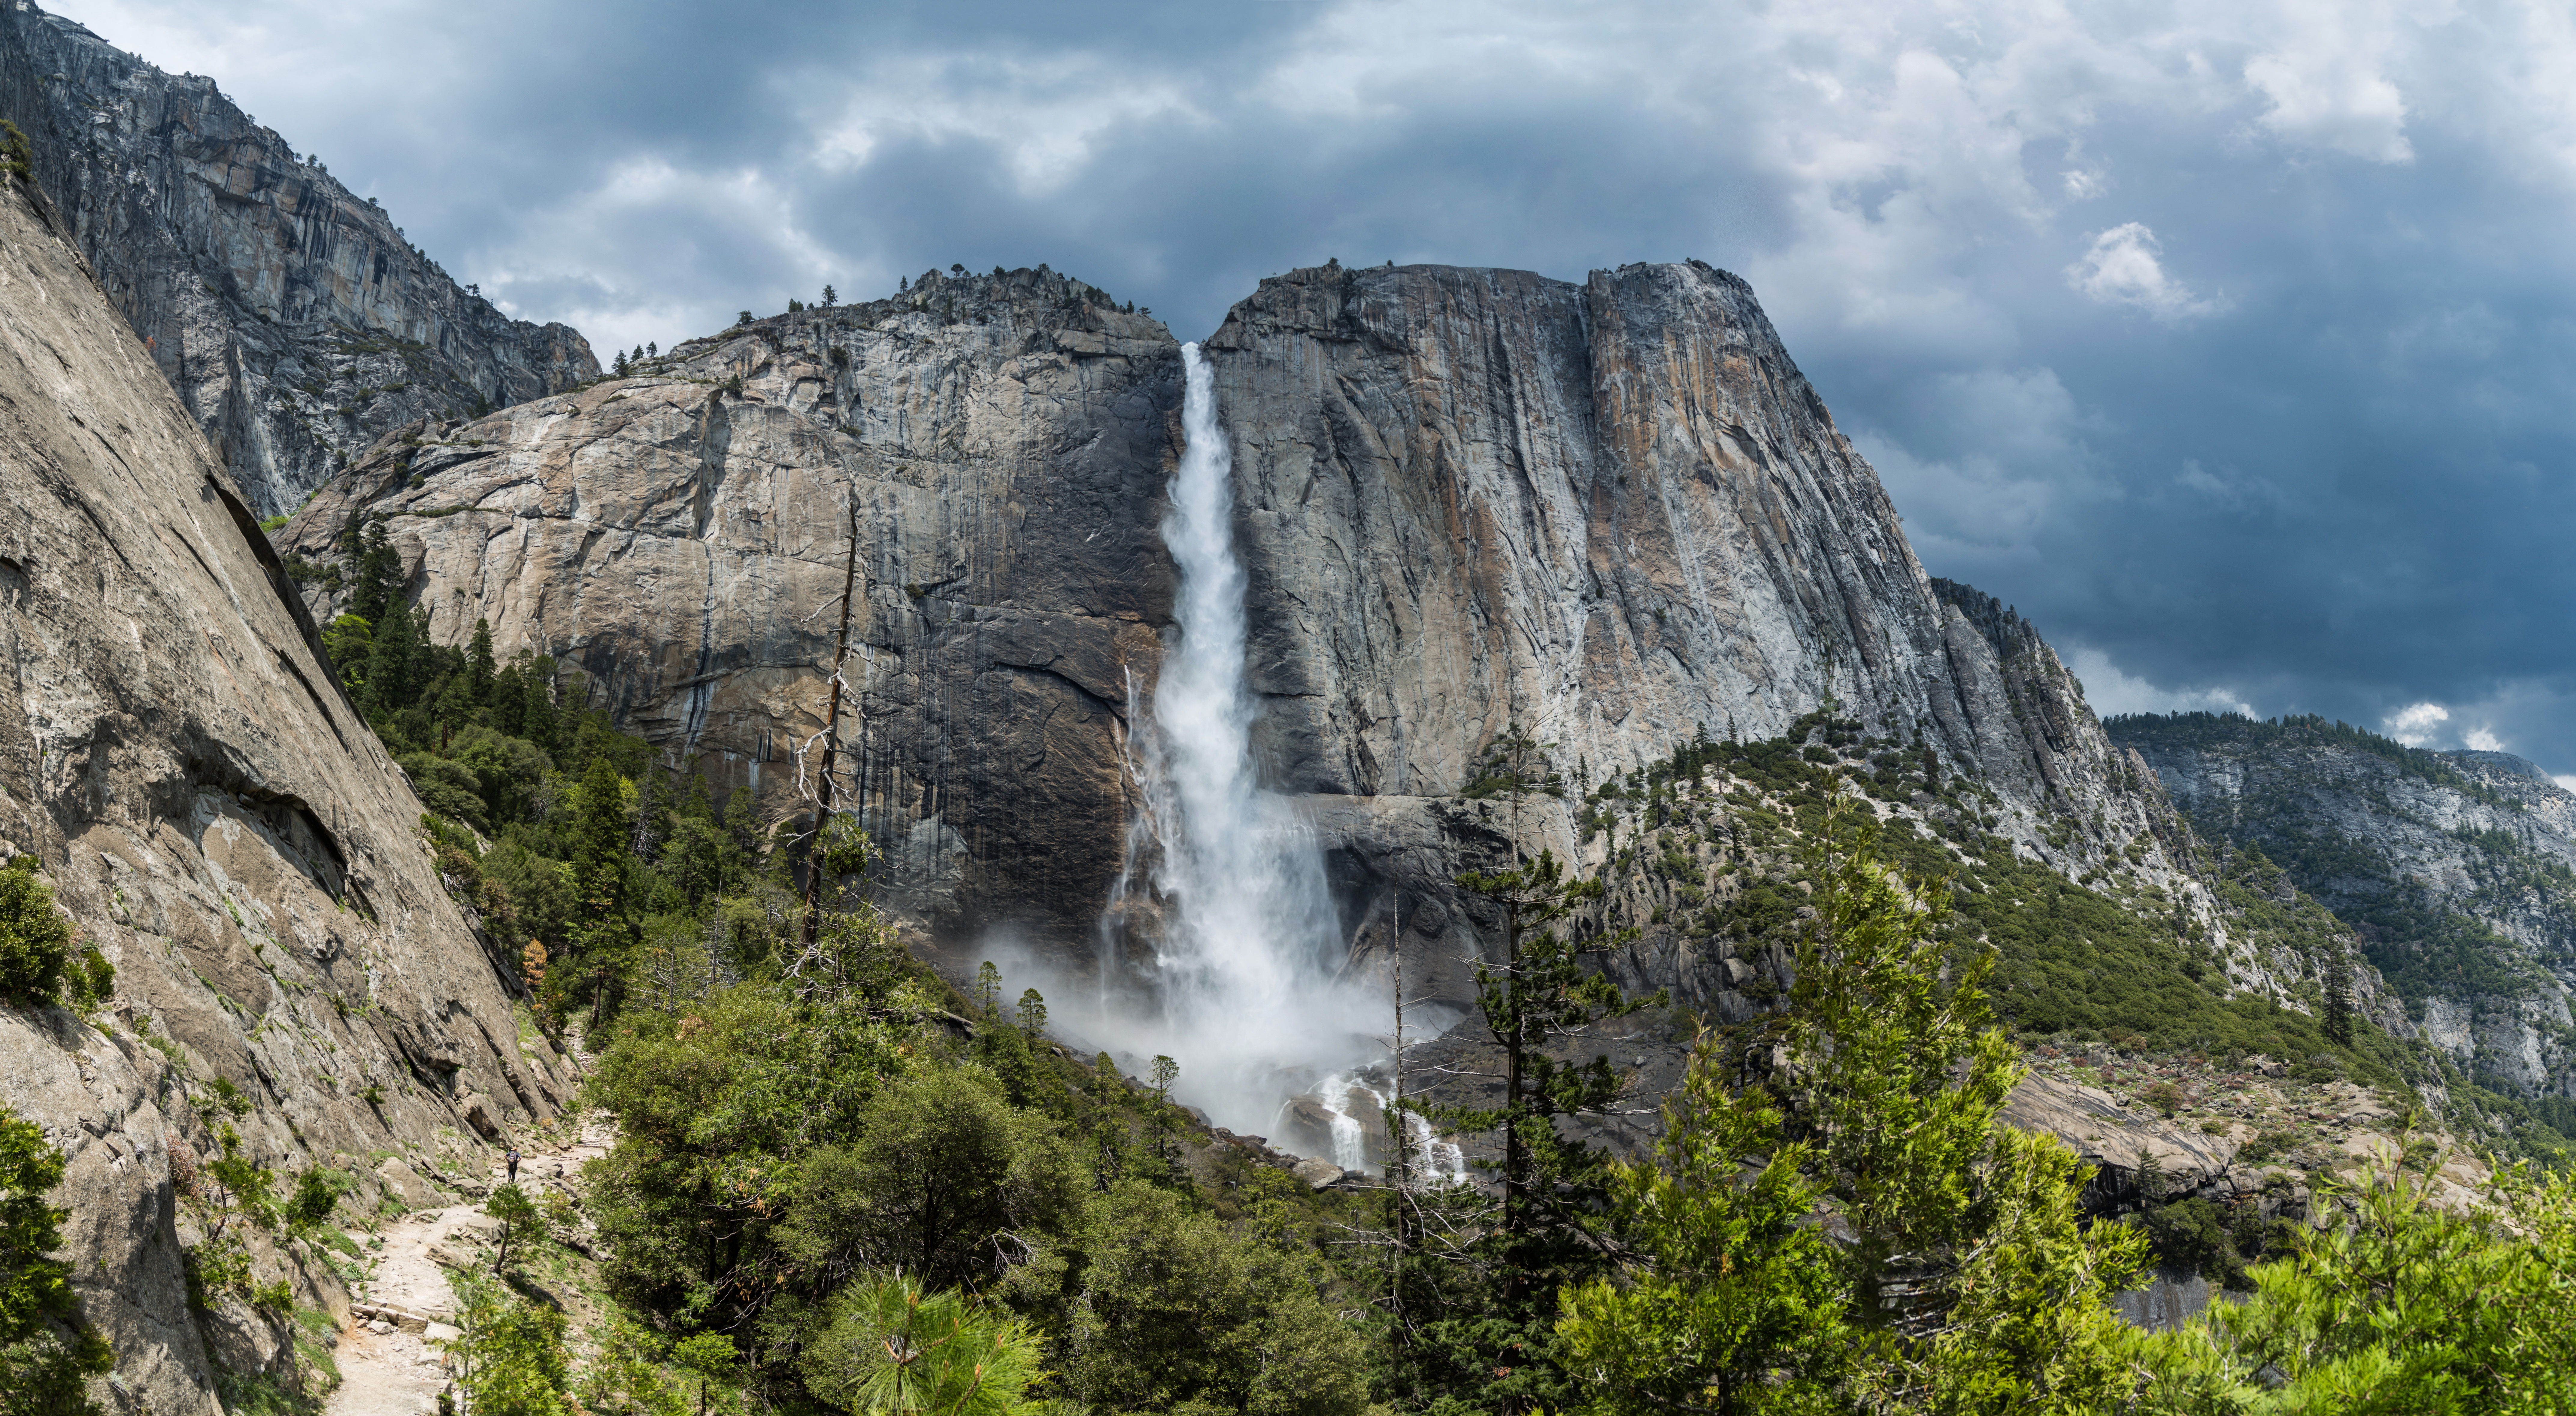 HQ Yosemite Falls Wallpapers | File 13306.12Kb